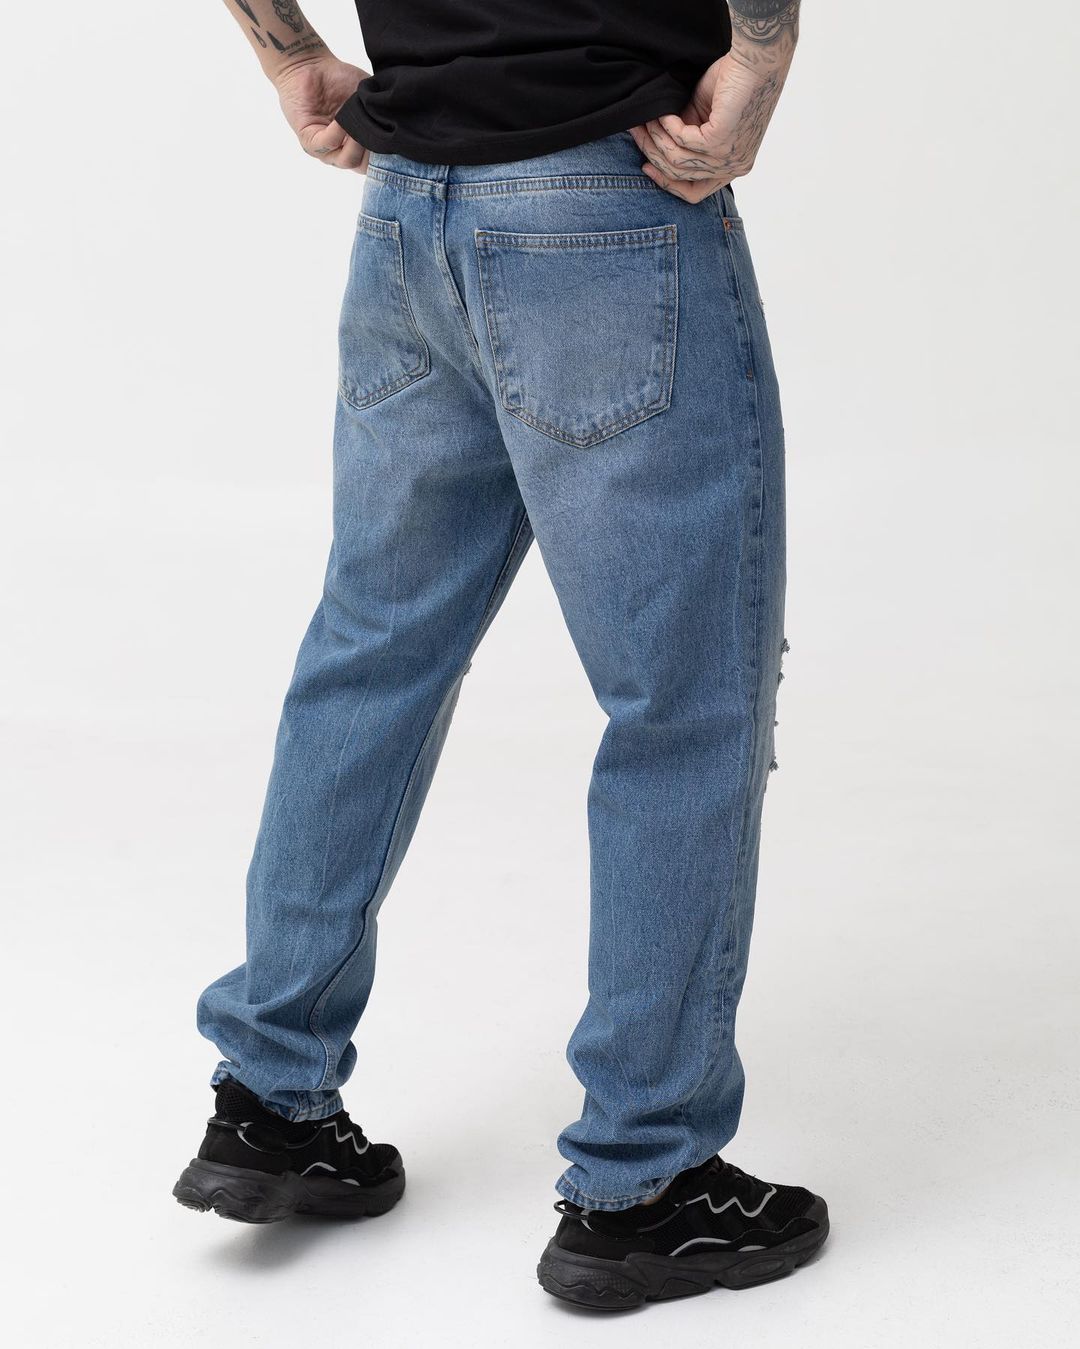 Чоловічі сині джинси BEZET базові з перфорацією - Фото 2